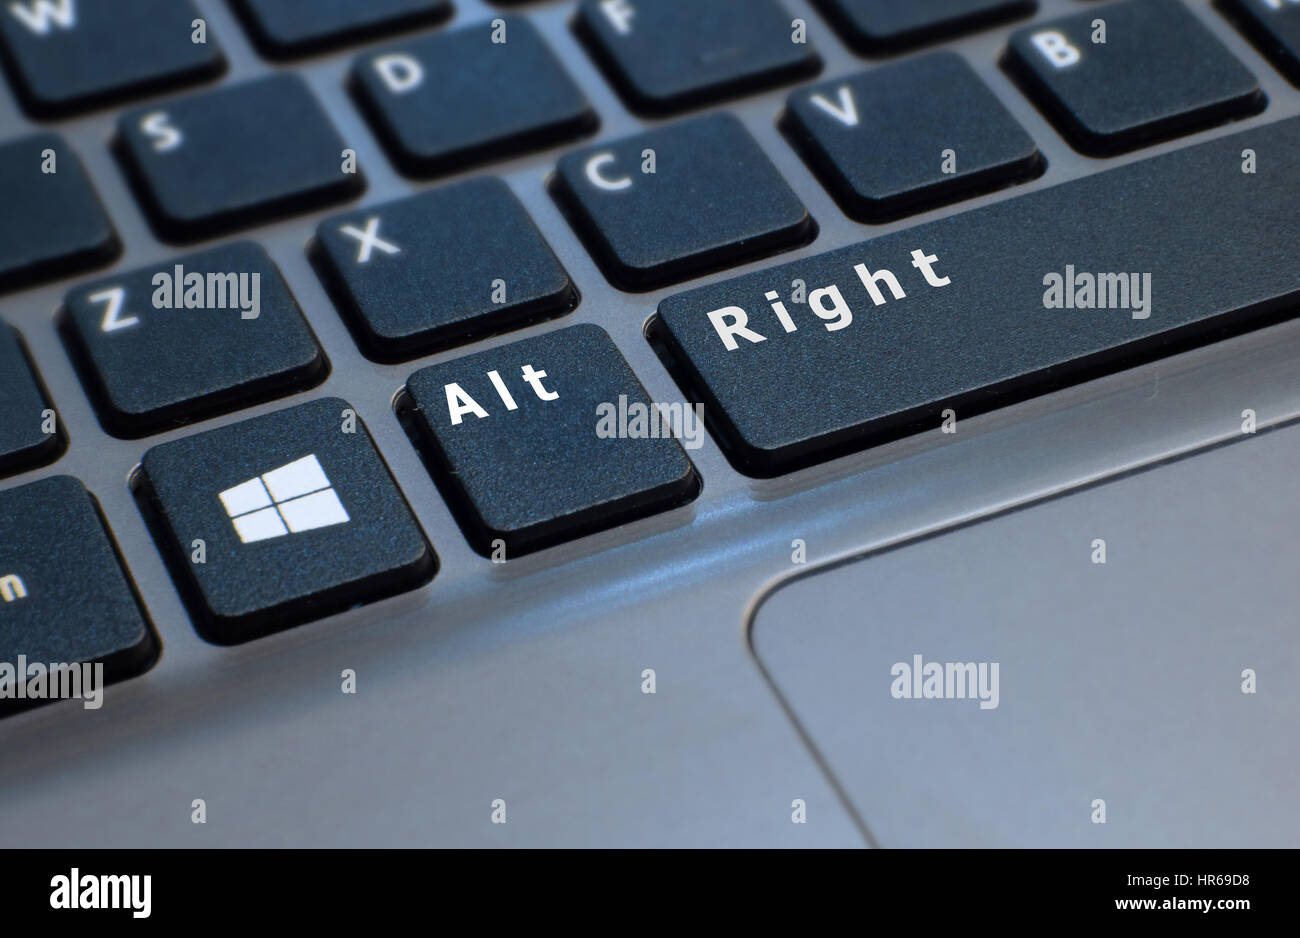 Une photo d'un clavier d'ordinateur portable retouché pour montrer la lecture des touches Alt droite. Référencement le nouveau mouvement d'extrême-droite en politique Banque D'Images